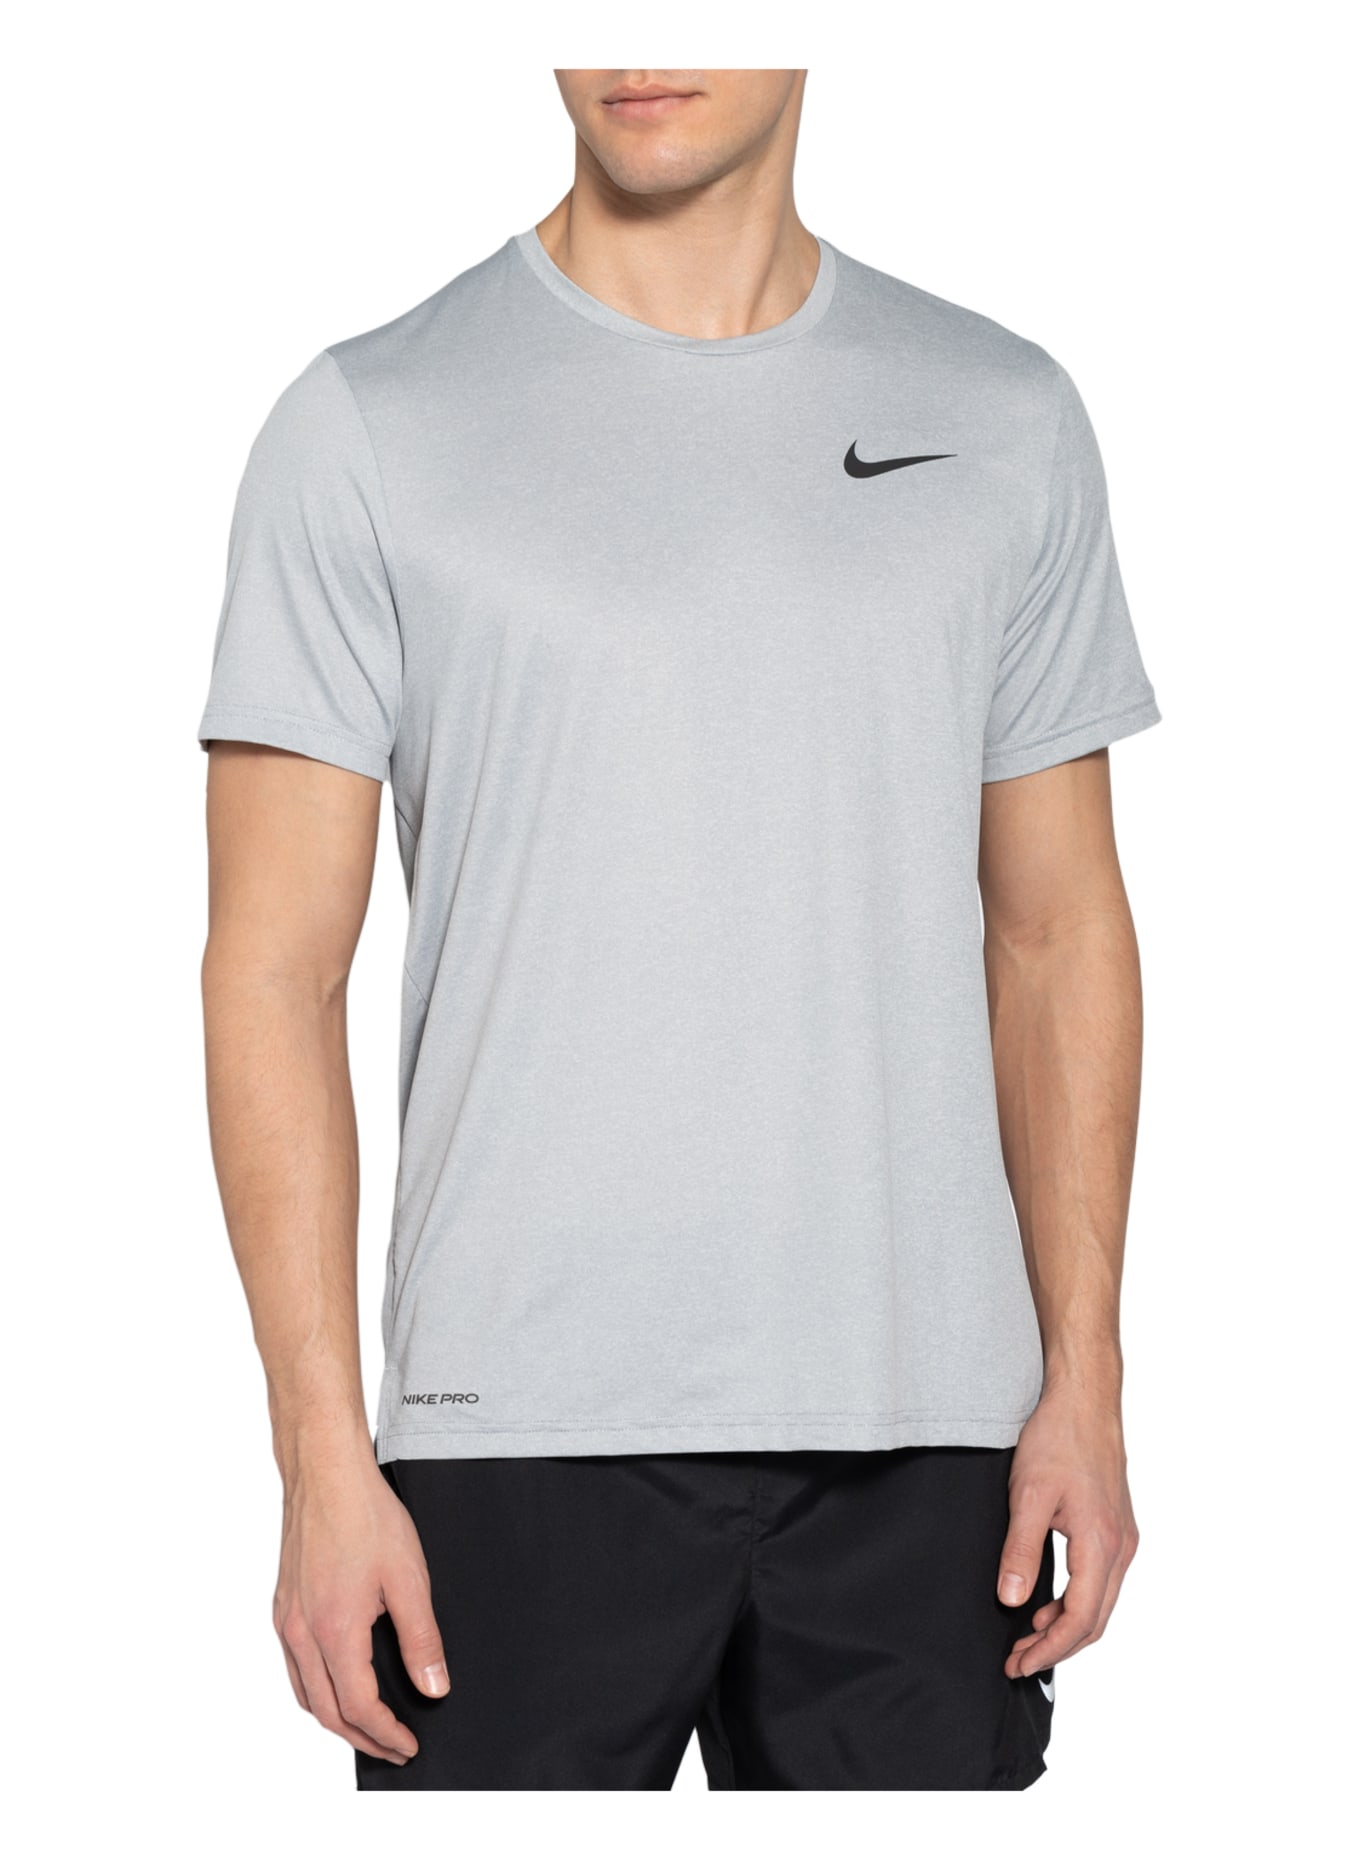 Nike T-shirt PRO DRI-FIT, Color: LIGHT GRAY (Image 4)